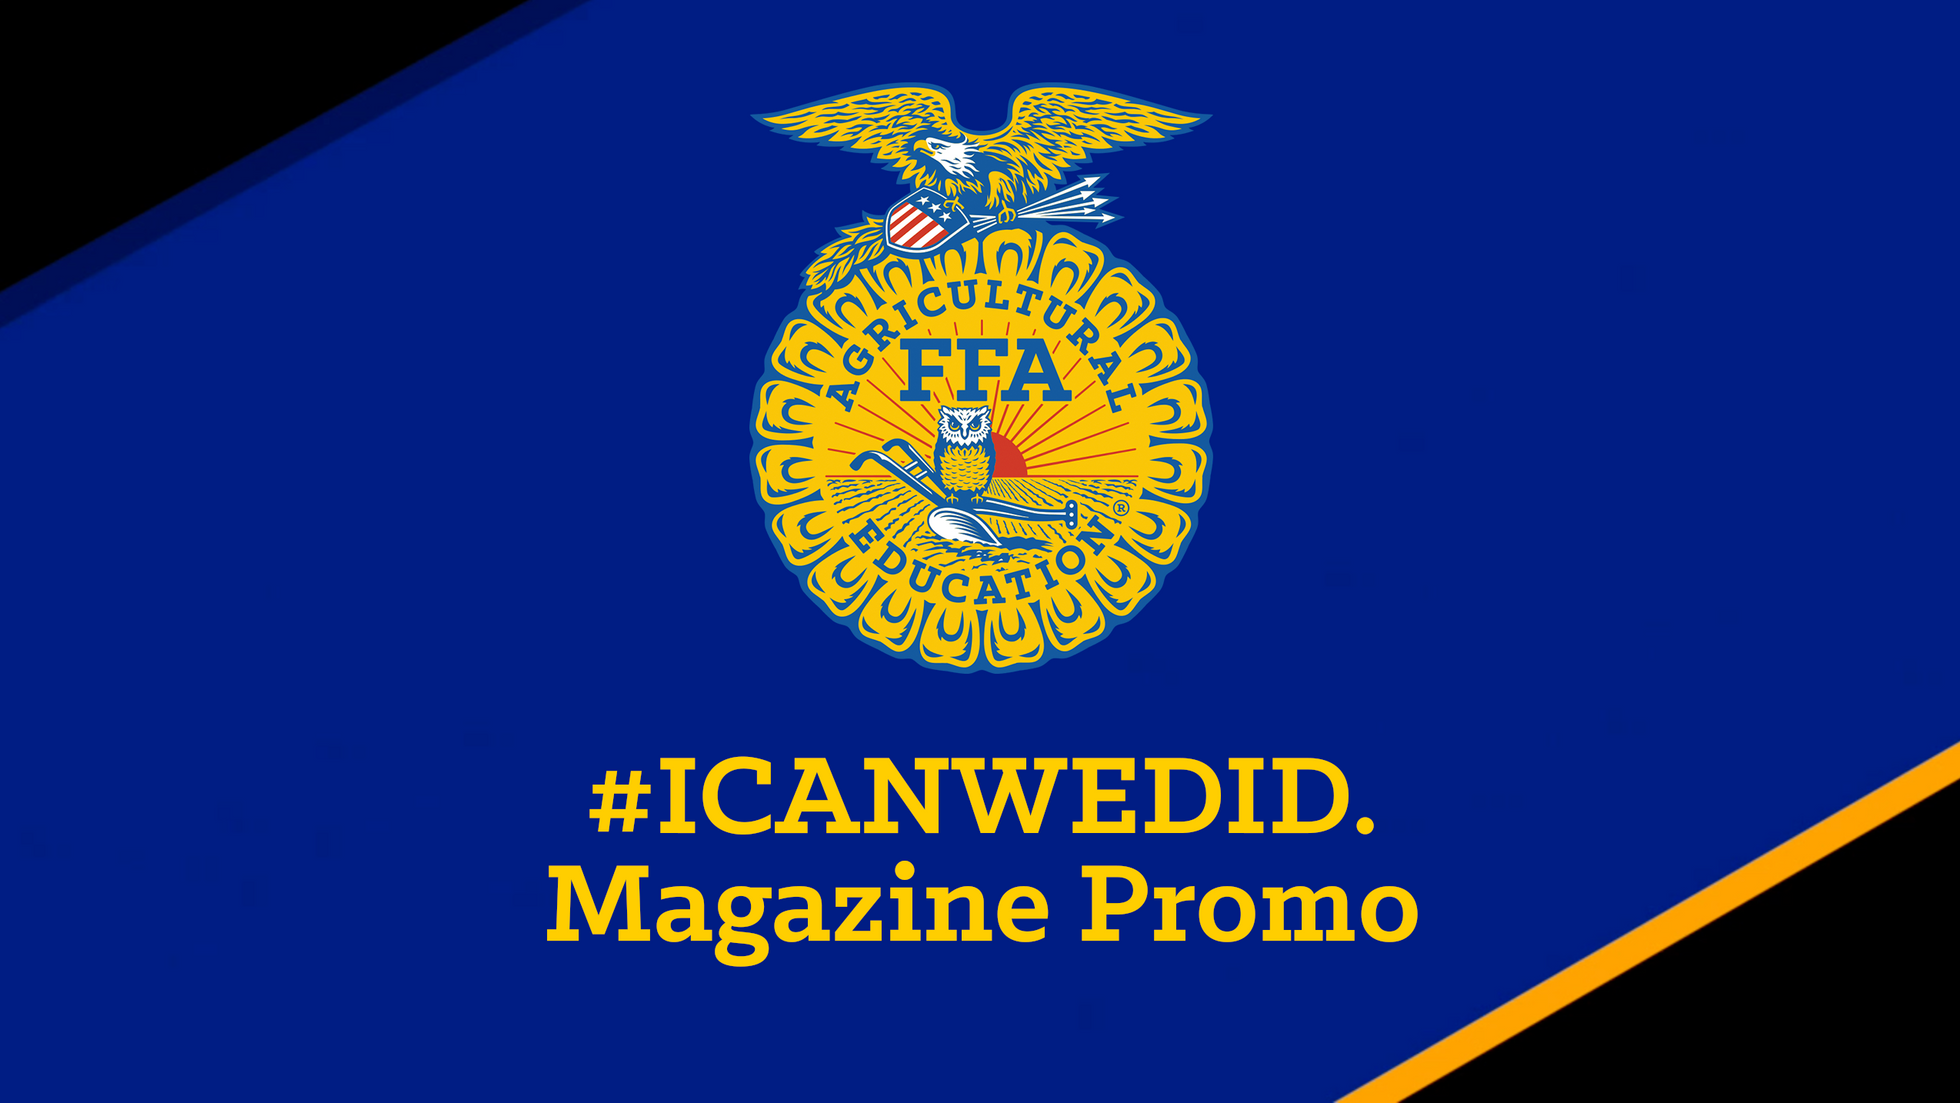 #ICanWeDid. Magazine Promo